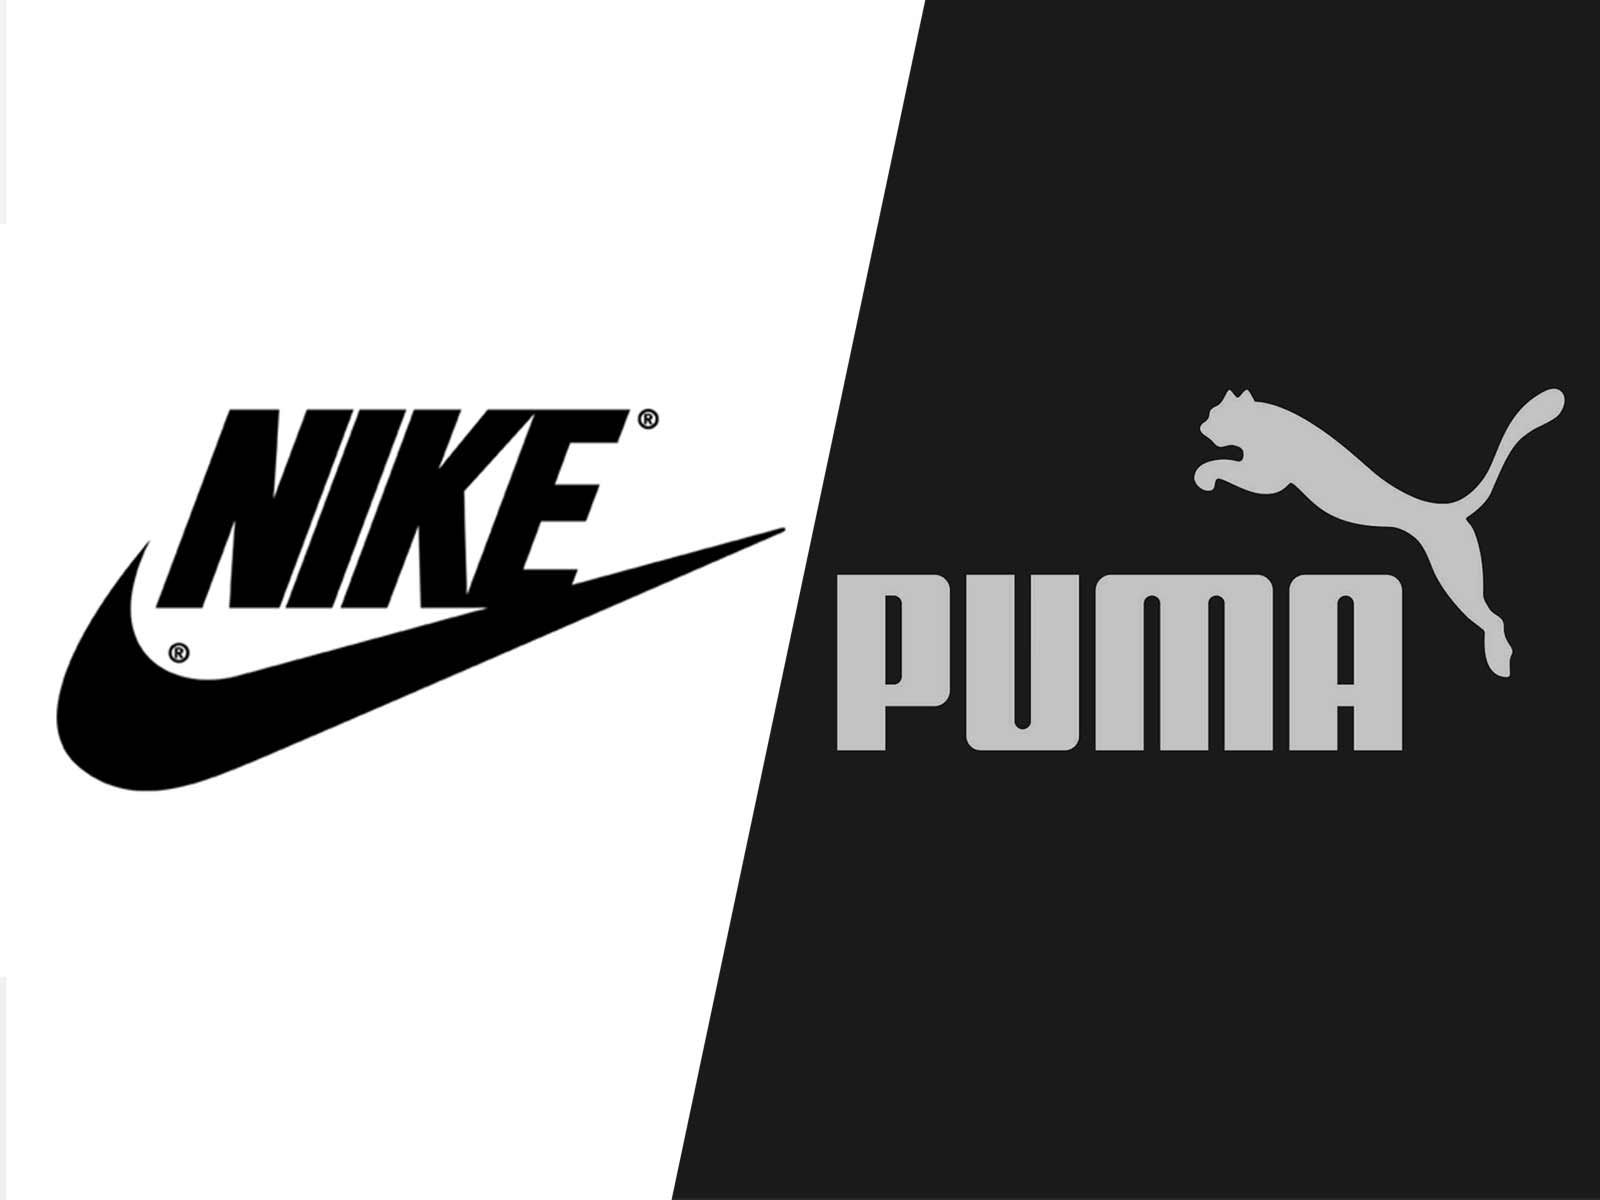 Nike Accuses Puma of Being a Footwear 